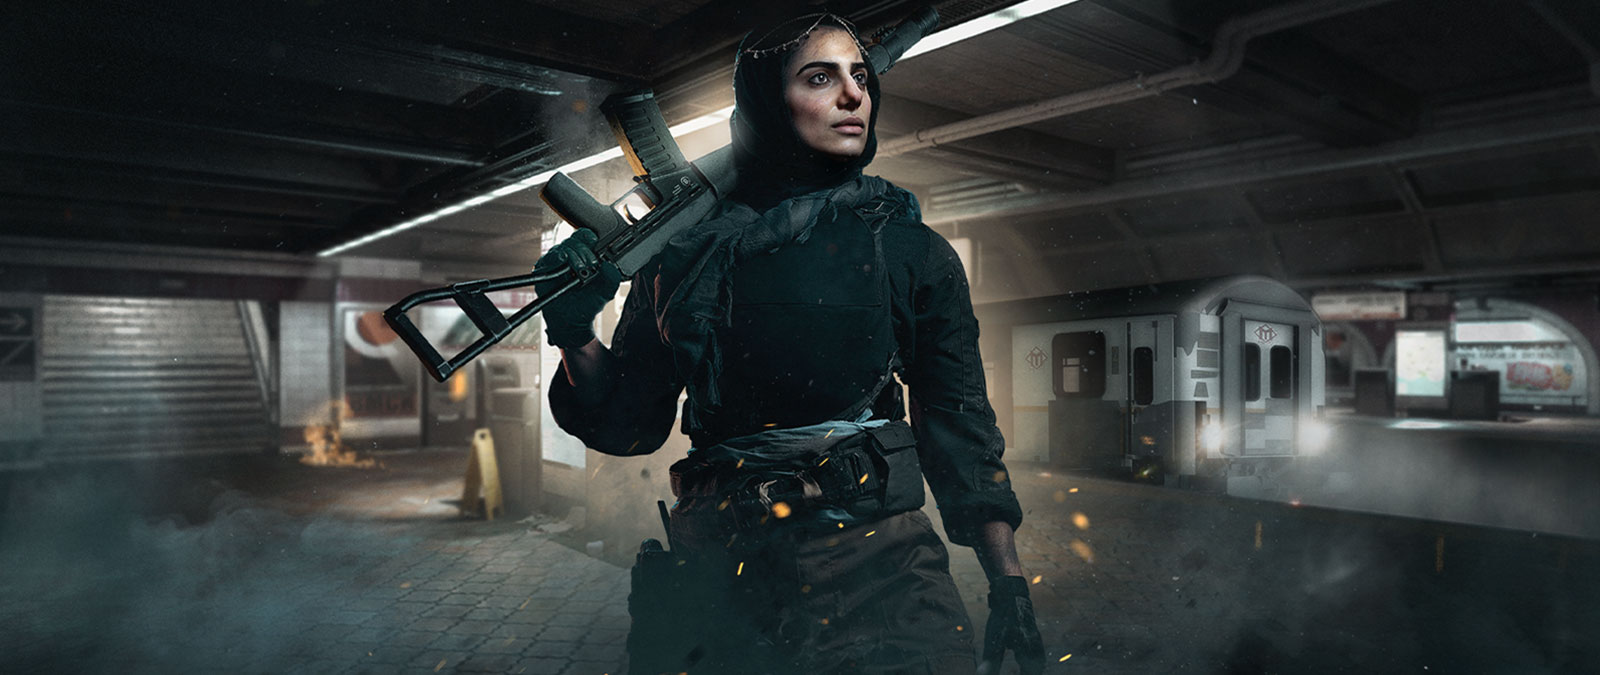 Персонаж из игры Call of Duty: Modern Warfare с оружием в руках на станции метро